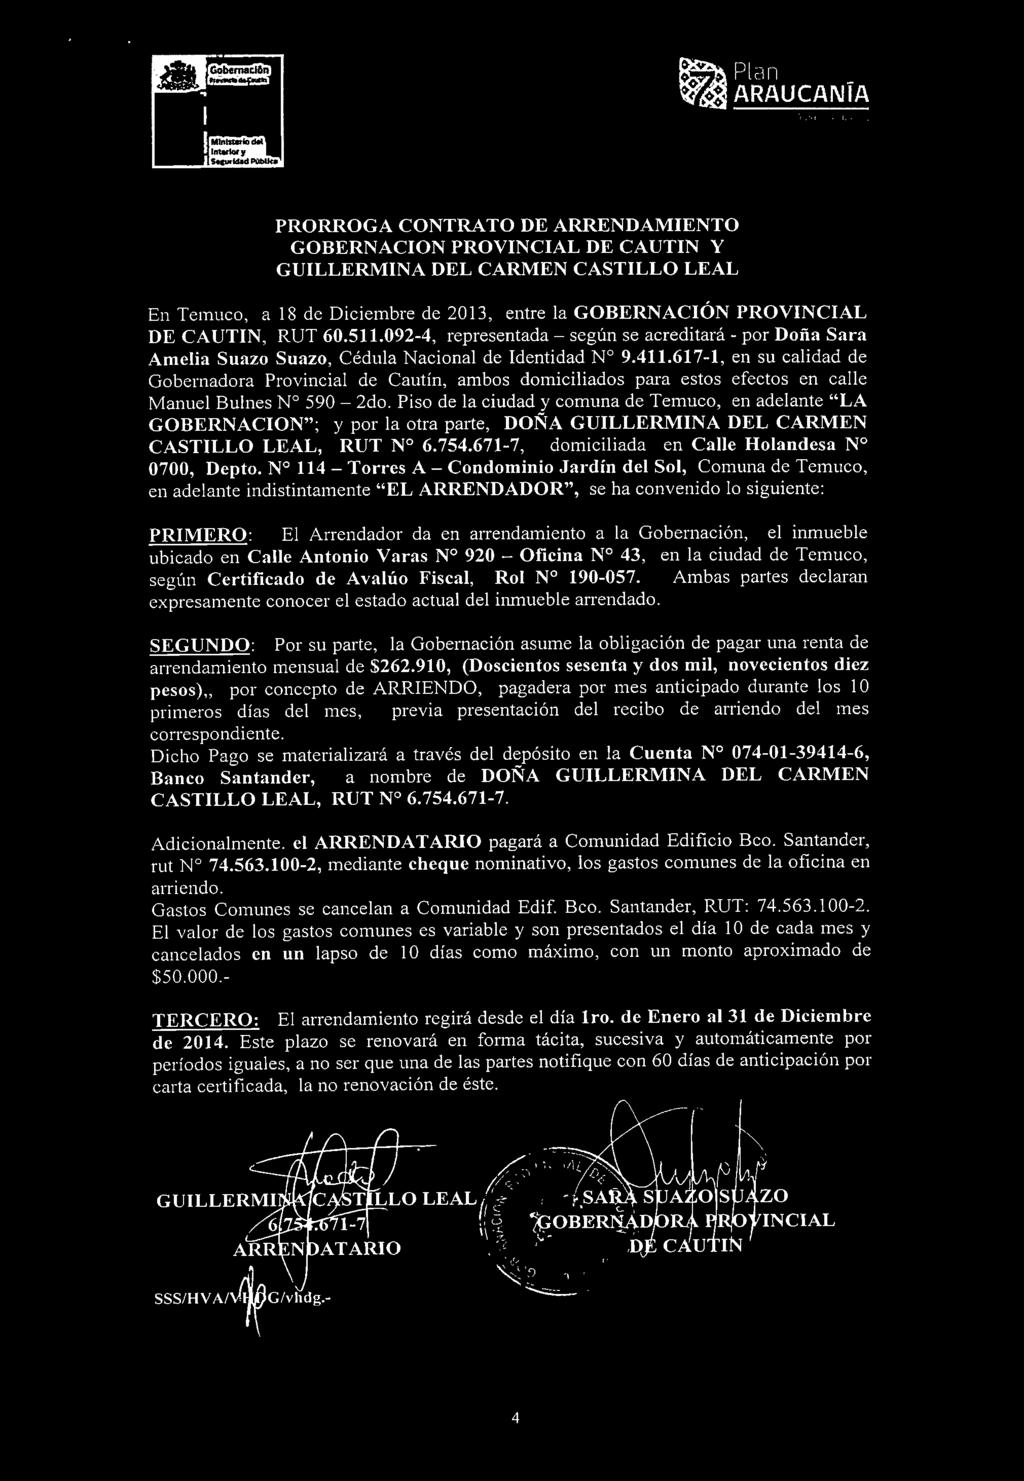 617-1, en su calidad de Gobernadora Provincial de Cautín, ambos domiciliados para estos efectos en calle Manuel Bulnes N 590-2do.